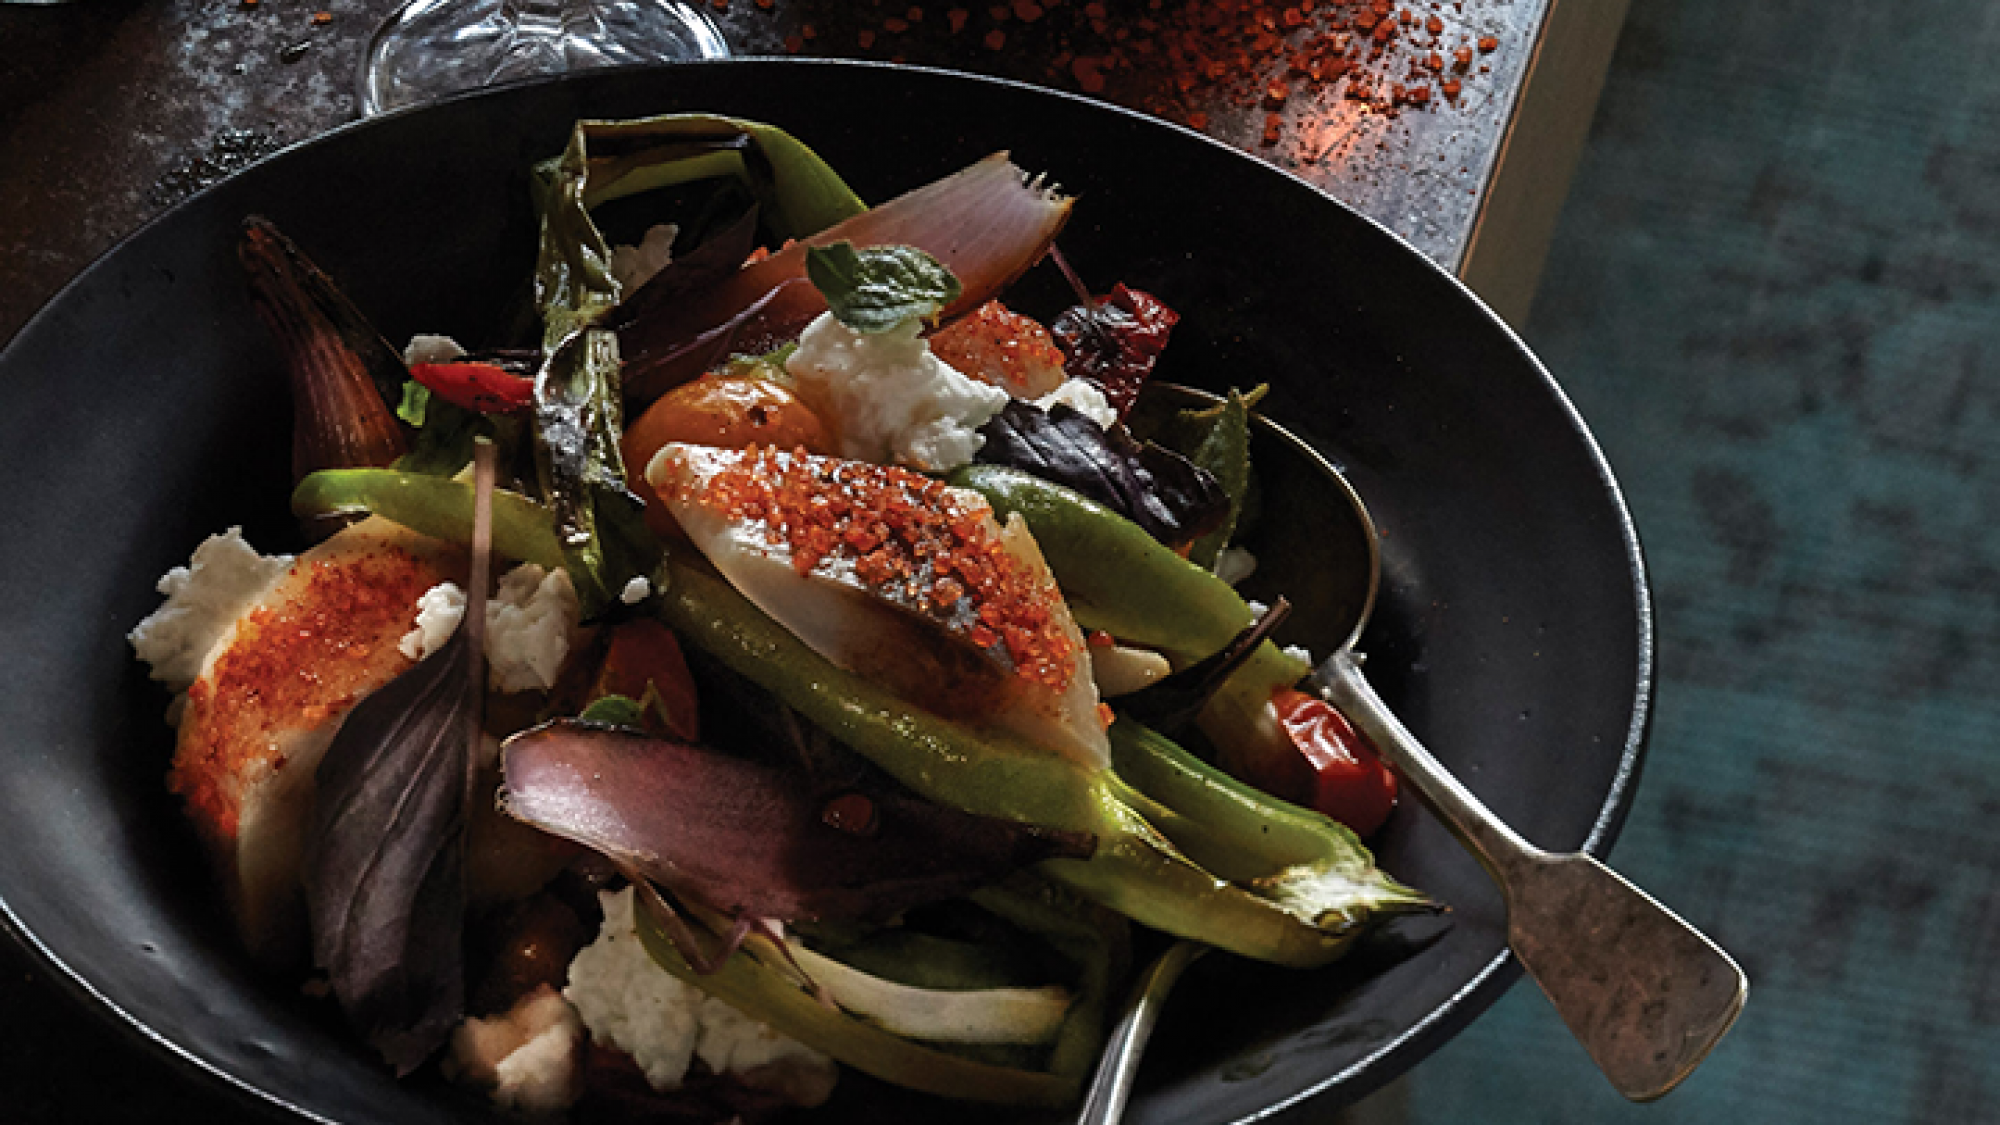 סלט לקרדה מוקפץ עם ירקות צרובים וגבינה בולגרית | צילום: אנטולי מיכאלו | סטיילינג: אינה גוטמן